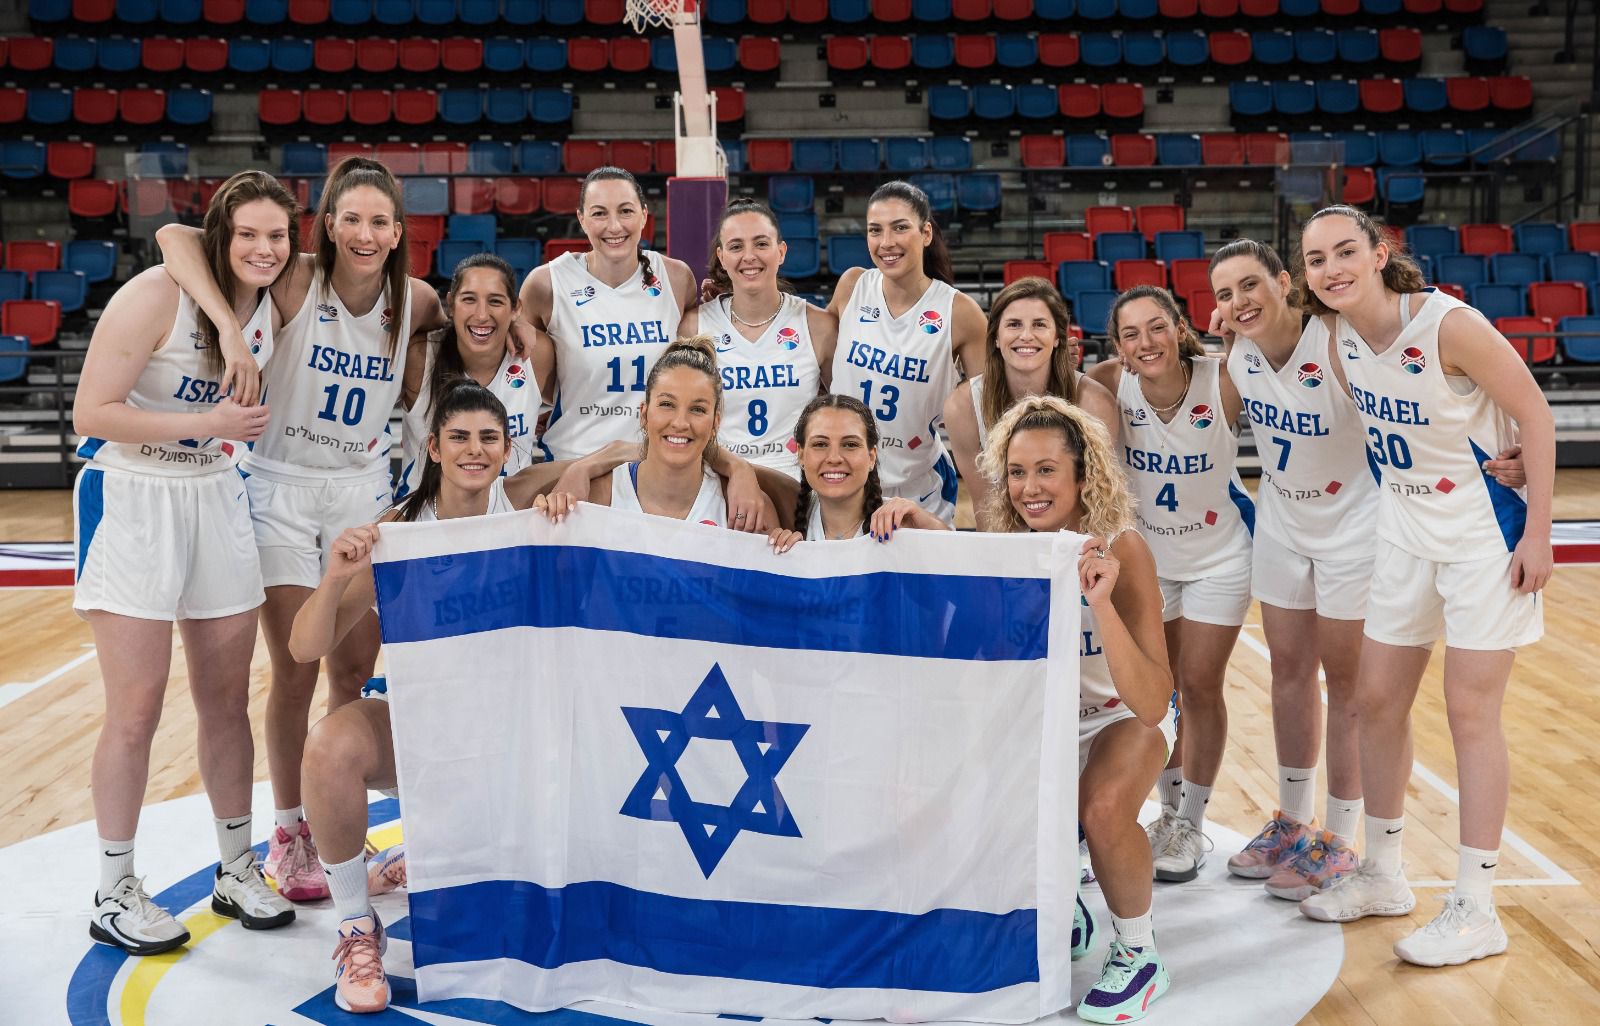 נבחרת הנשים של ישראל בכדורסל. &quot;יש לנו נבחרת מוכשרת, אני מקווה שהן יצליחו לחוות ניצחון&quot; (צילום: עודד קרני, איגוד הכדורסל בישראל)